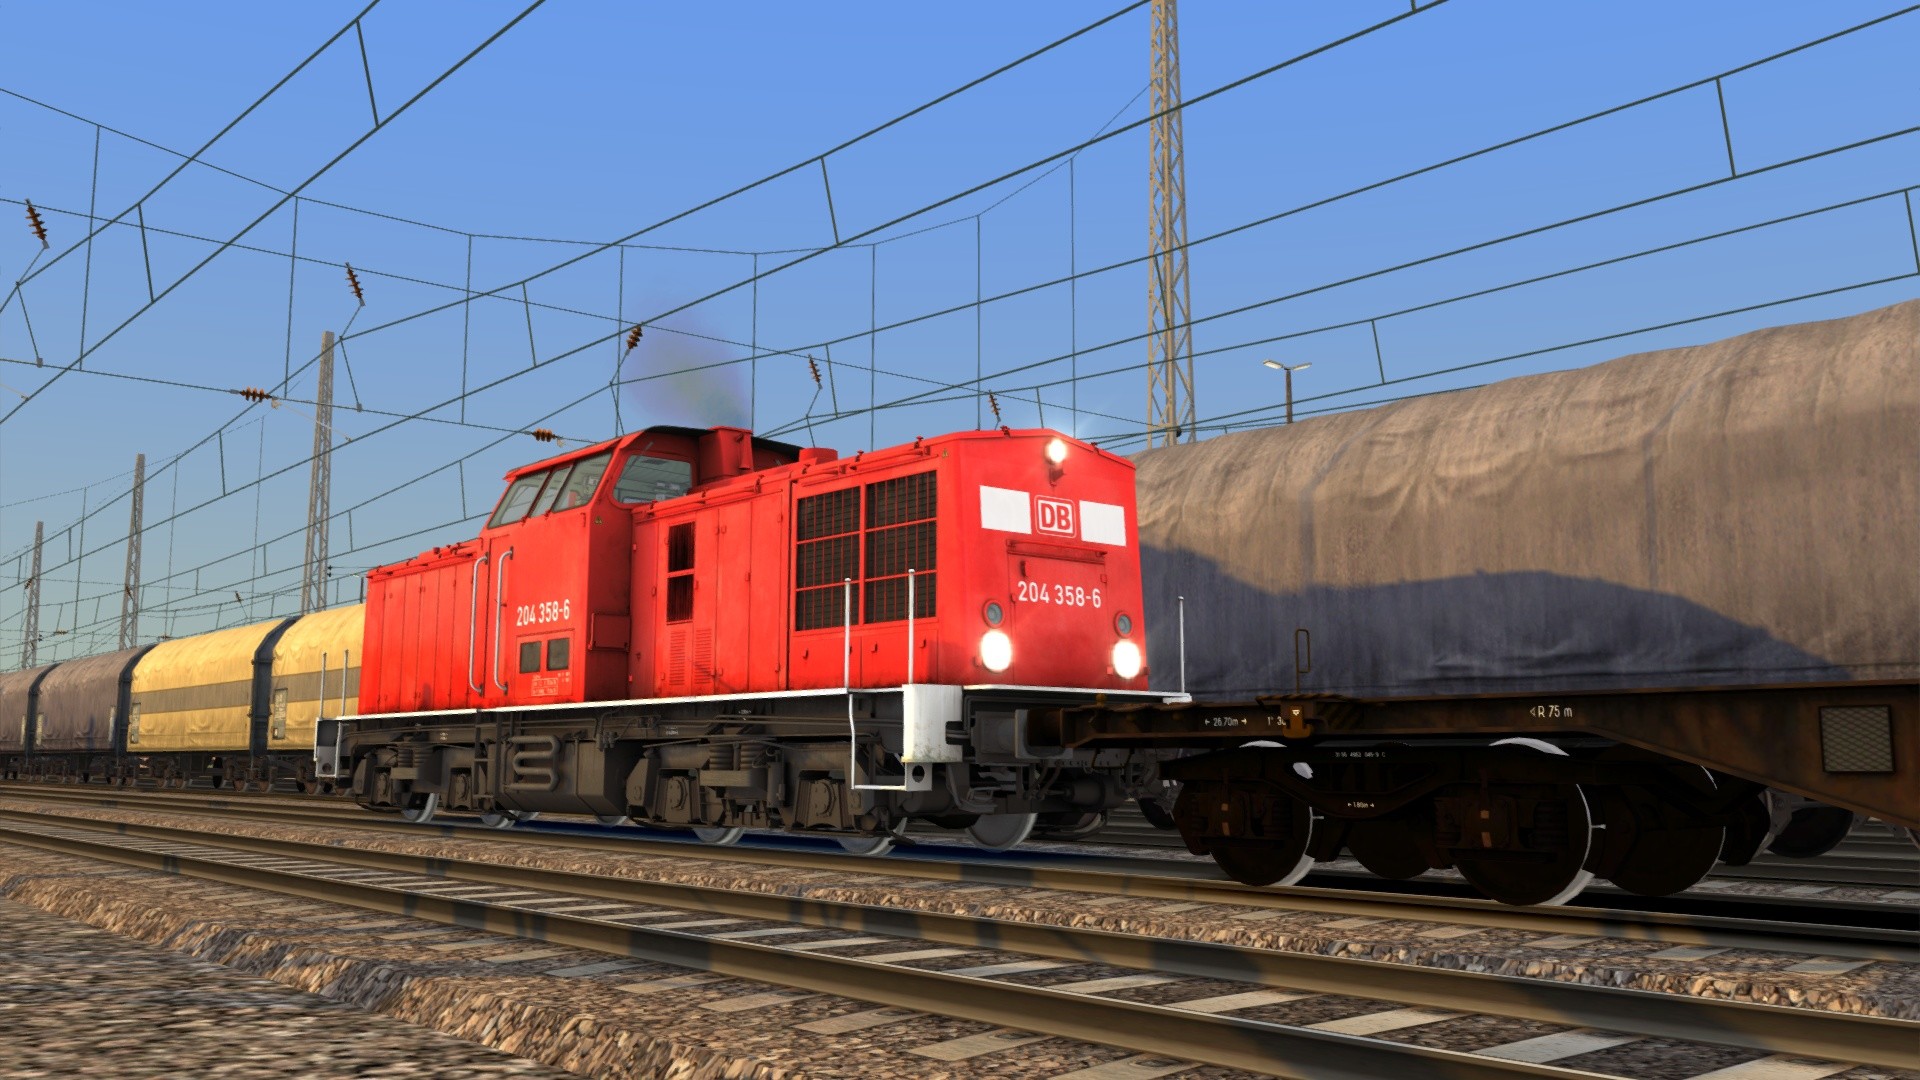 Train Simulator - DB BR 204 Loco Add-On DLC Steam CD Key, 0.9 usd